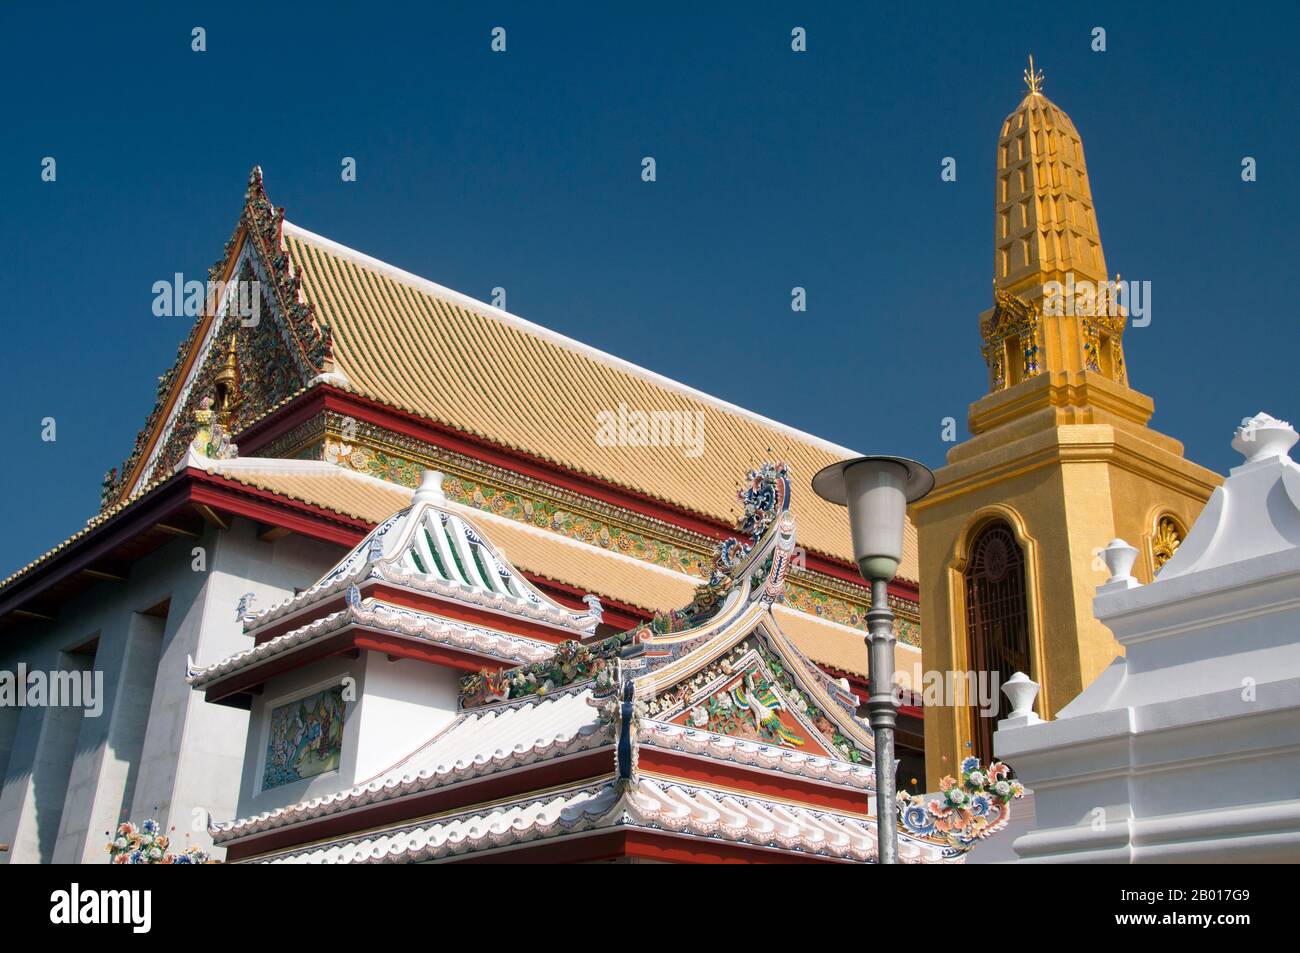 Thailandia: Wat Bowonniwet, Bangkok. Il Tempio di Bowonniwet Vihara è uno dei principali templi buddisti di Phra Nakorn, la Città Vecchia di Bangkok ed è stato costruito a metà del 19th secolo durante il regno di Re Jessadabodindra (Rama III). È stato a lungo un tempio di patronato per la famiglia reale thailandese della dinastia Chakri, tra cui il re Mongkut (Rama IV) e il re Bhumibol Adulyadej (Rama IX). Nel 1836, prima di diventare re, Mongkut fu l'abate. L'attuale re di Thailandia, Bhumibol Adulyadej, risiedeva qui come monaco per un breve periodo. Foto Stock